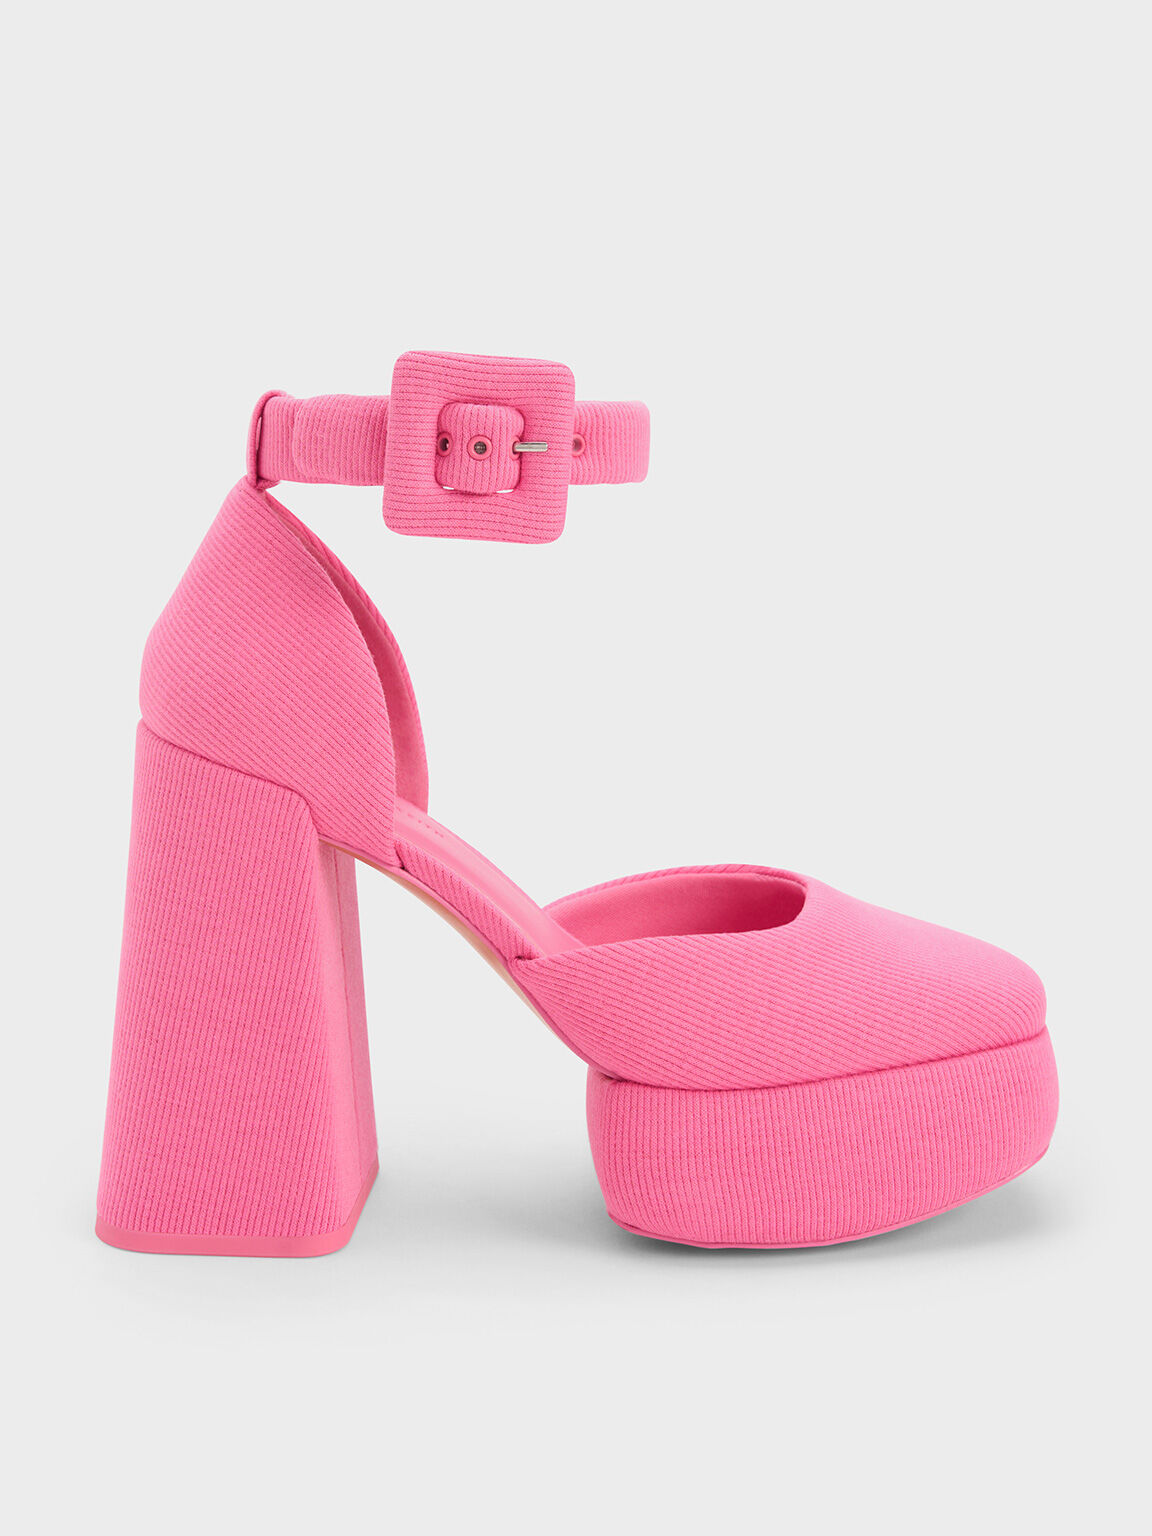 Buy Pink Heeled Sandals for Women by Sneak-a-Peek Online | Ajio.com